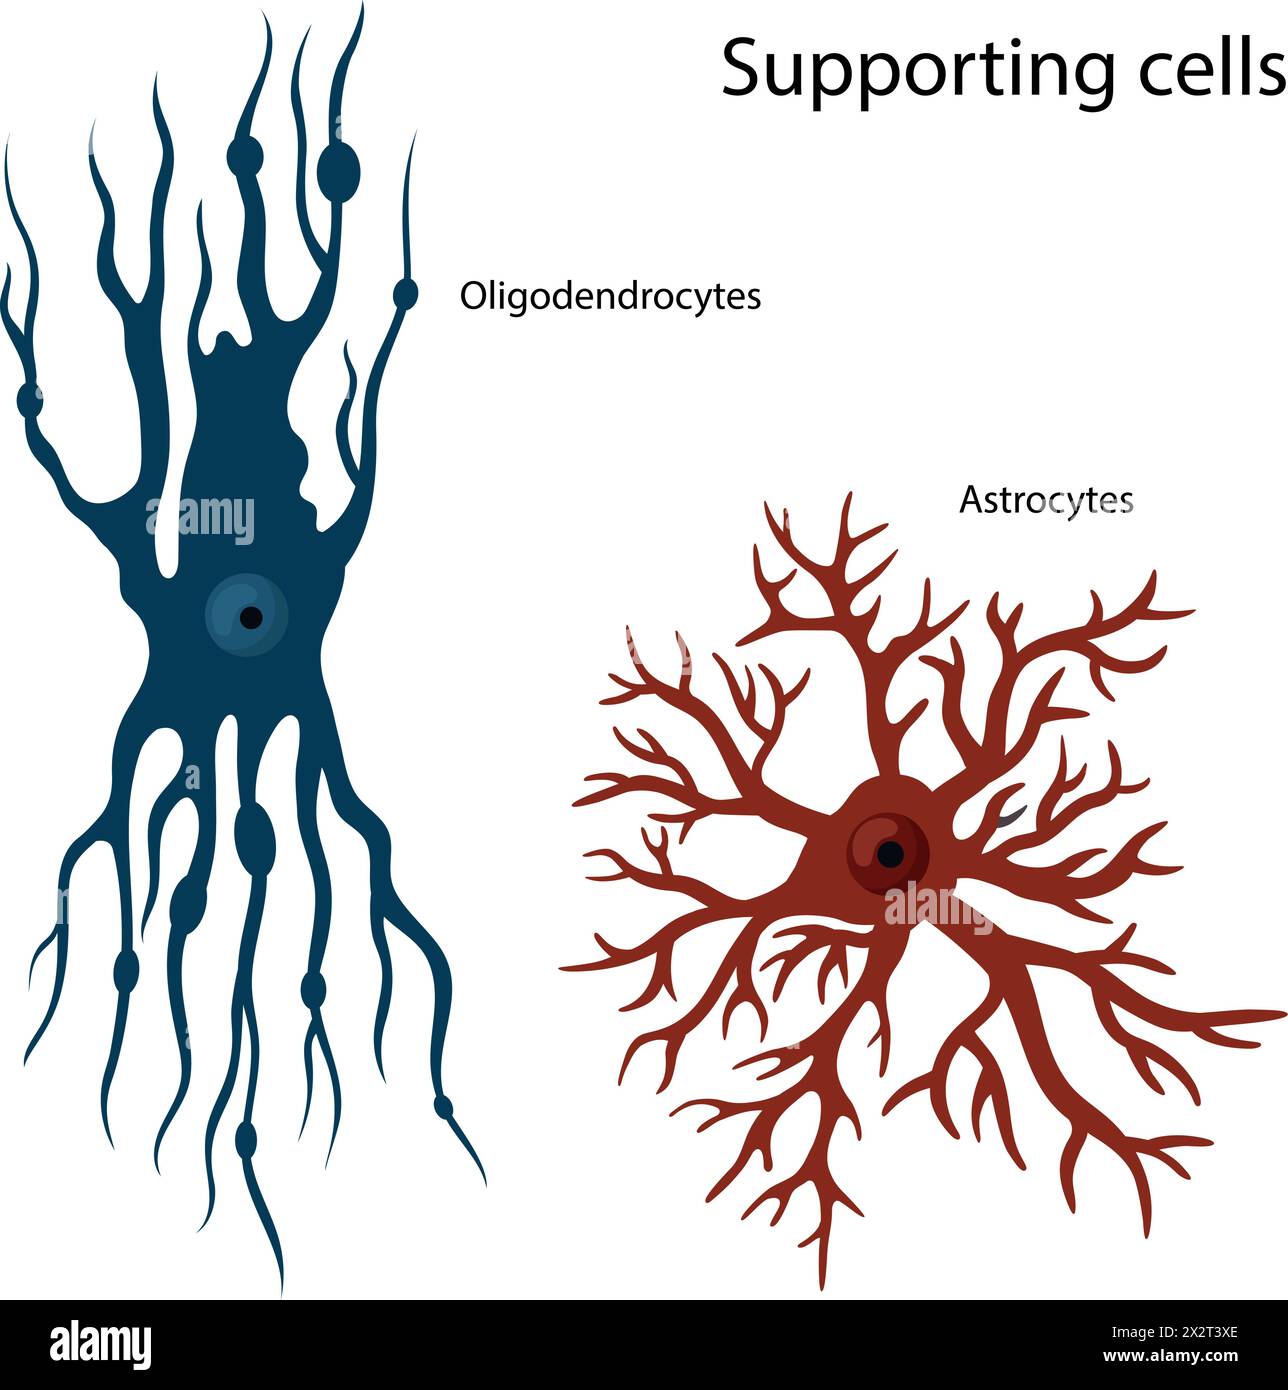 Cellule di supporto Oligodendrocytes e astrocytes. Illustrazione Vettoriale